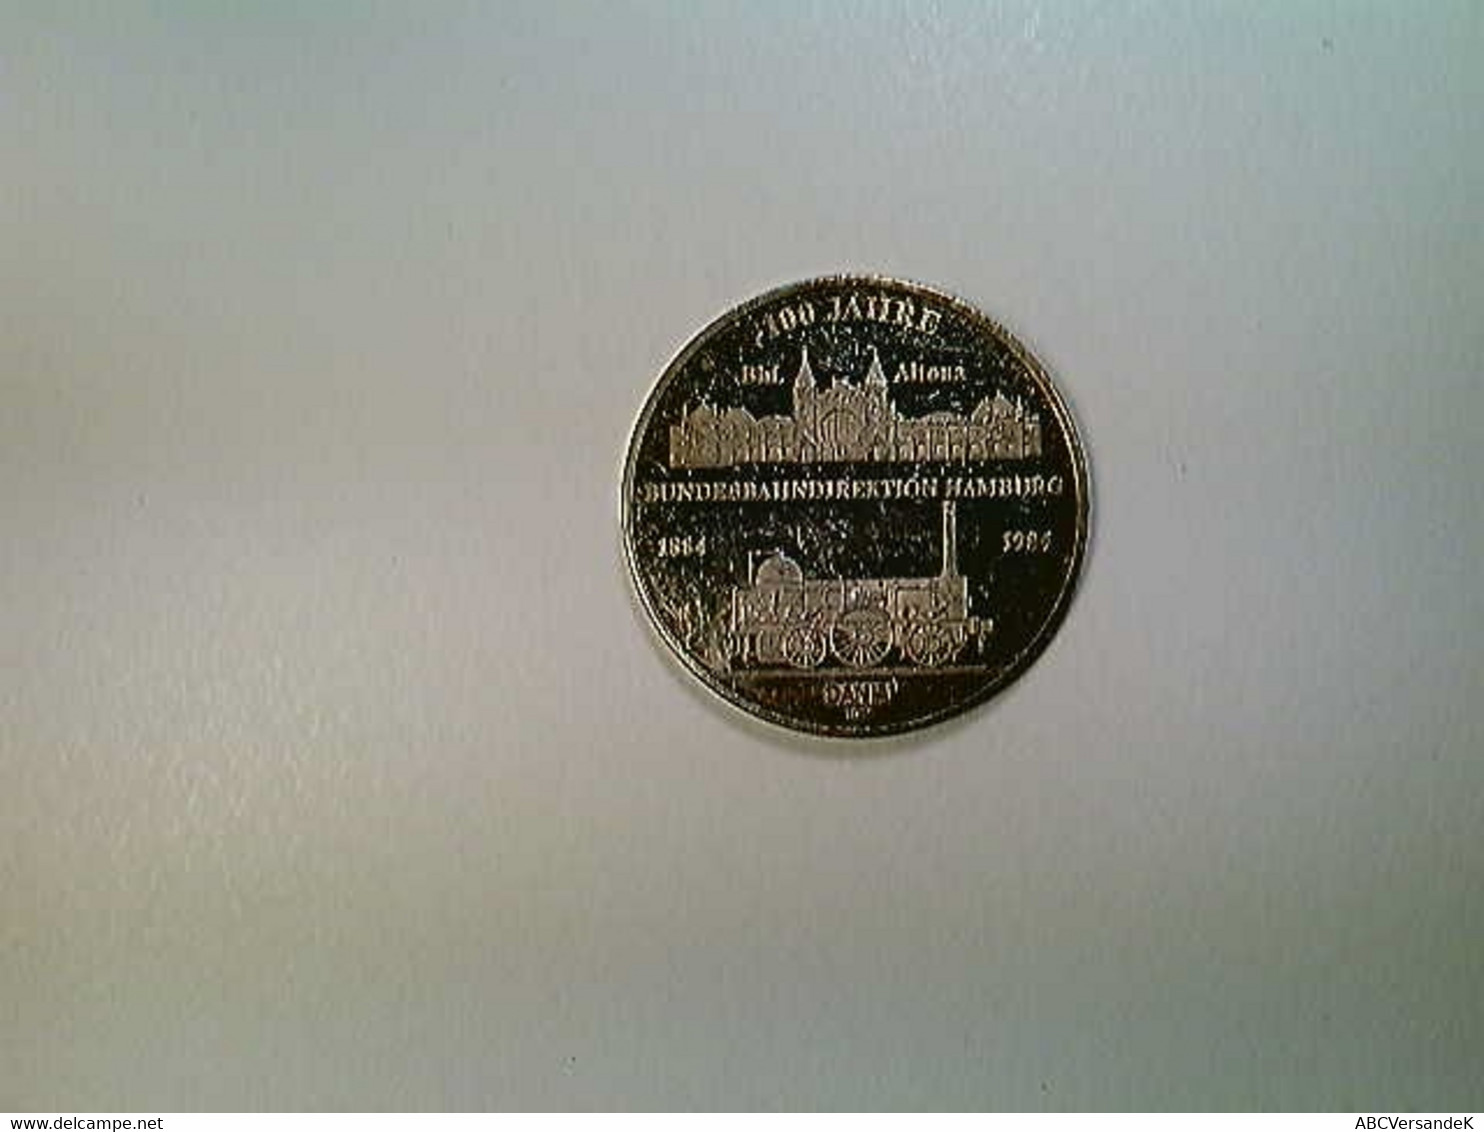 Medaille Hamburg 100 Jahre Bundesbahndirektion 1884-1984, Silber 1000 - Numismatique